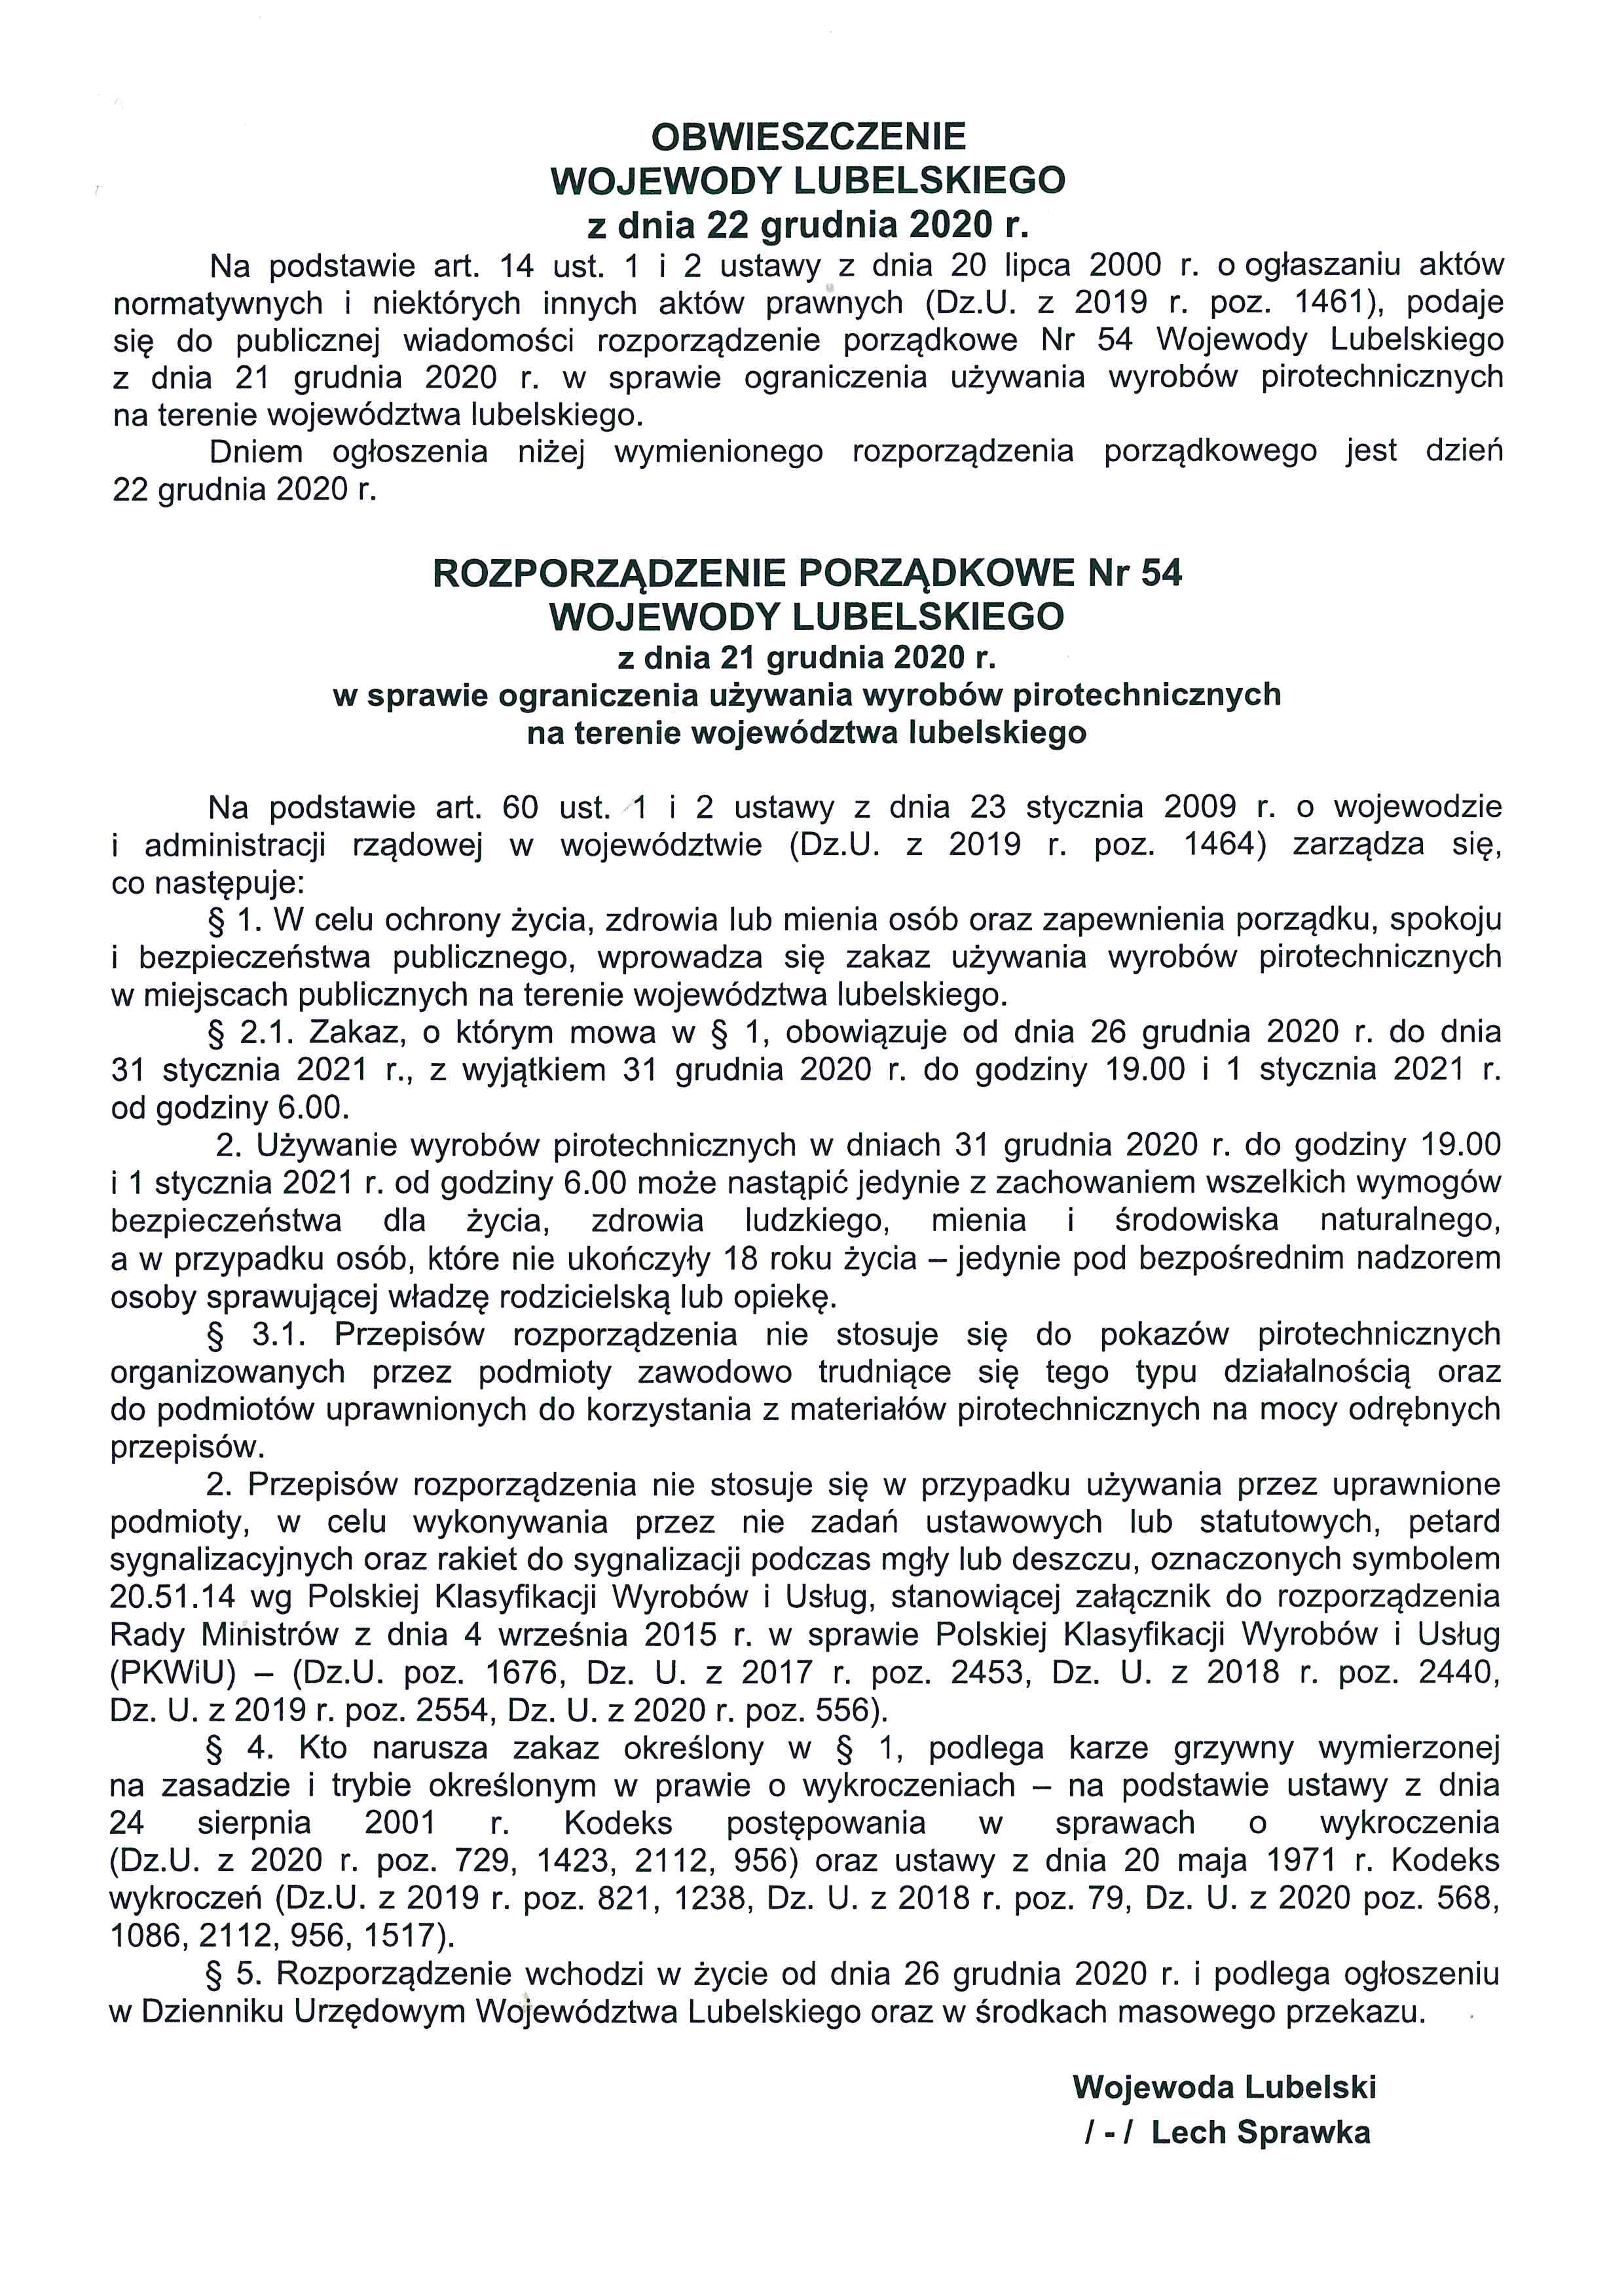 Obwieszczenie Wojewody Lubelskiego z dnia 22 grudnia 2020r. - zdjęcie